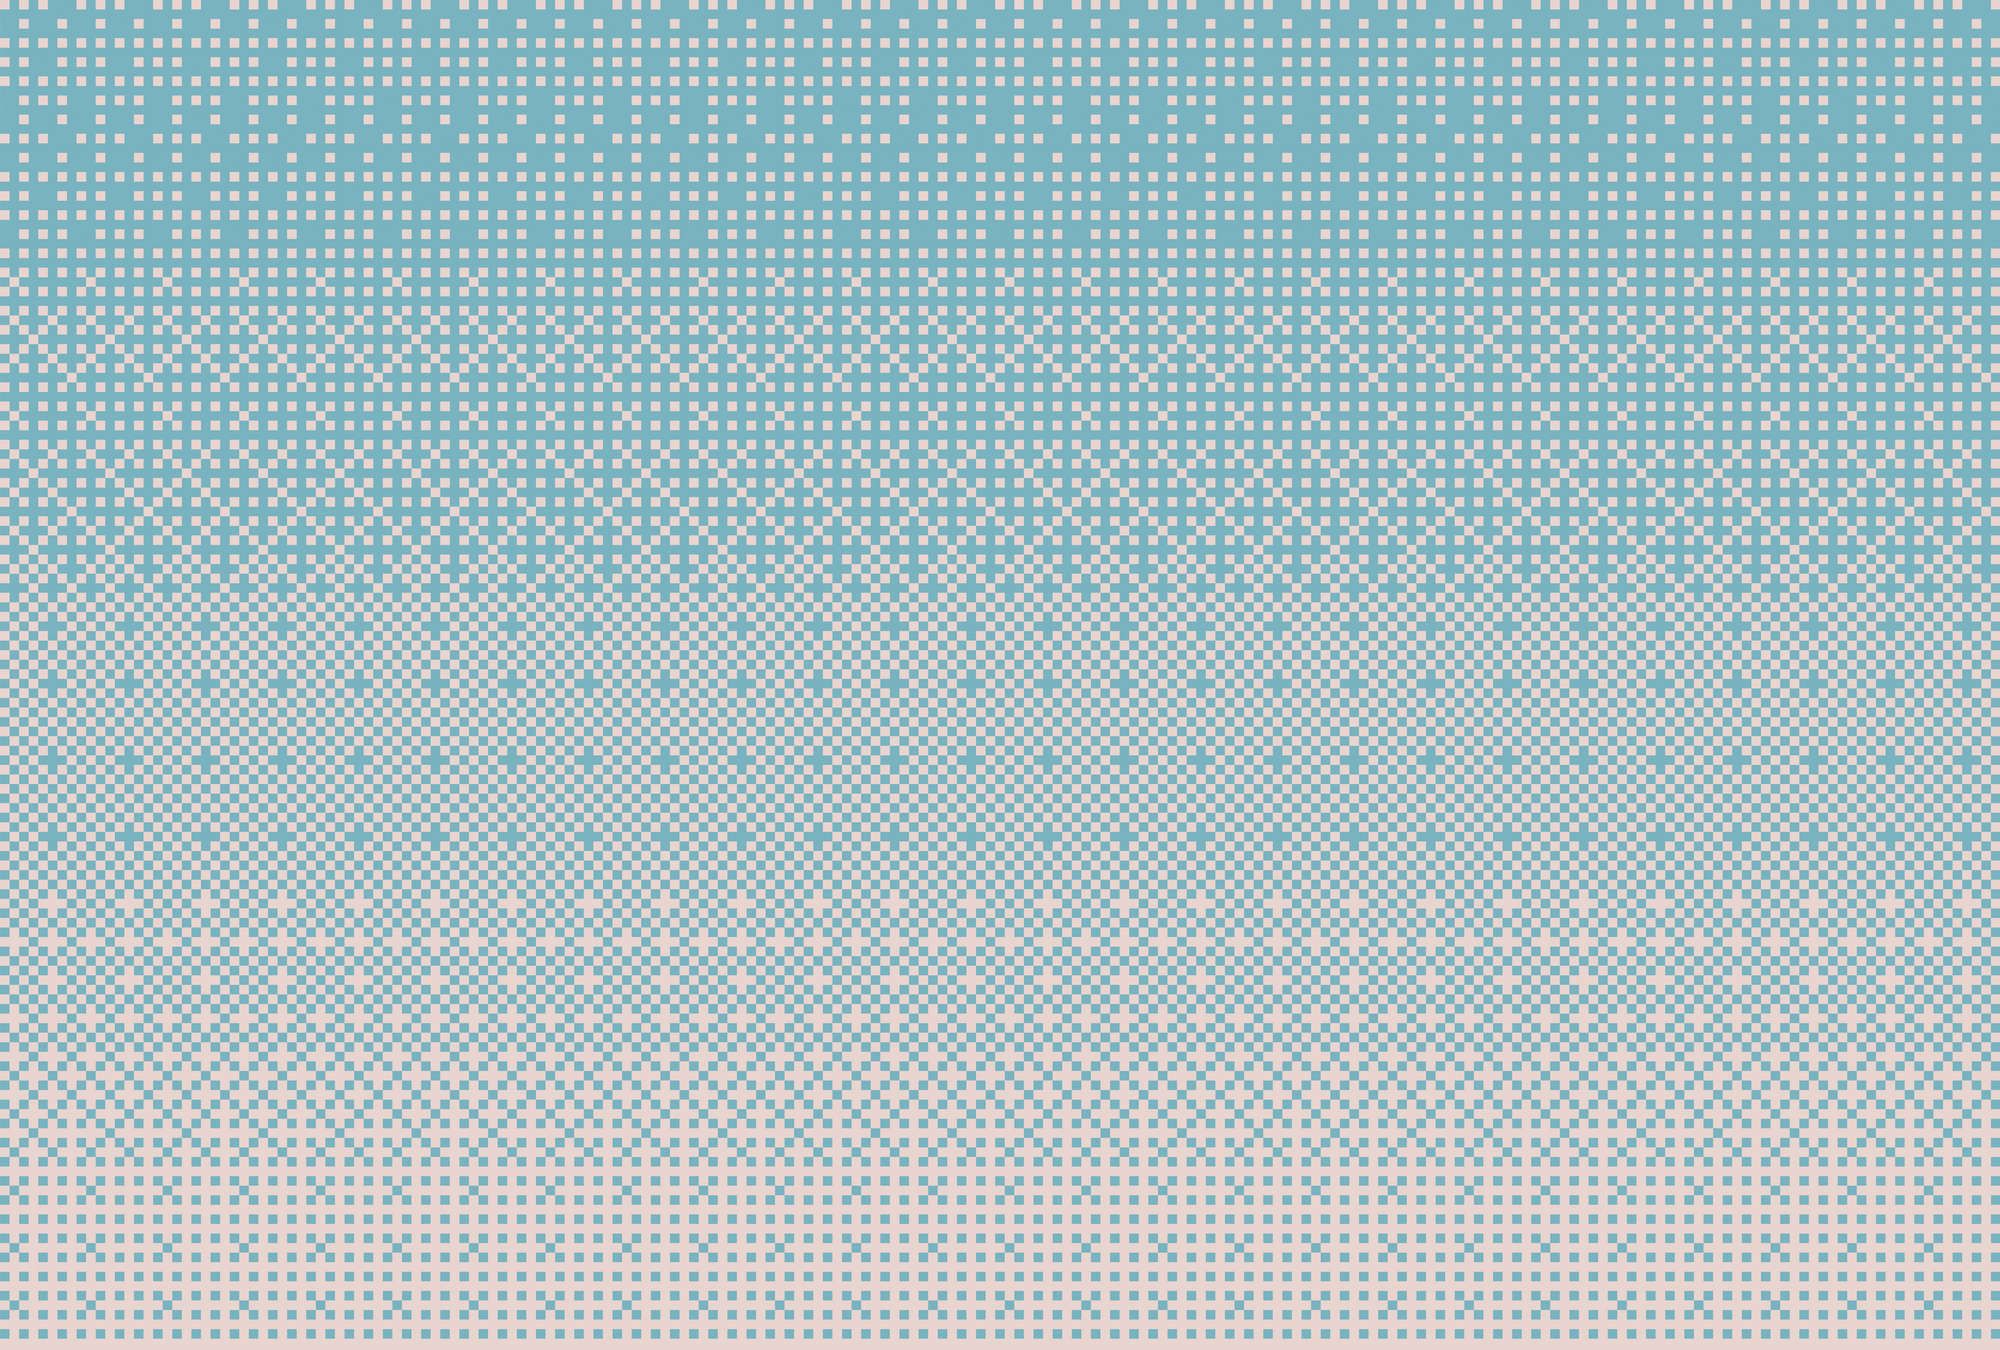             papier peint en papier panoramique »pixi blue« - motif au point de croix style pixel - bleu | Intissé lisse, légèrement nacré
        